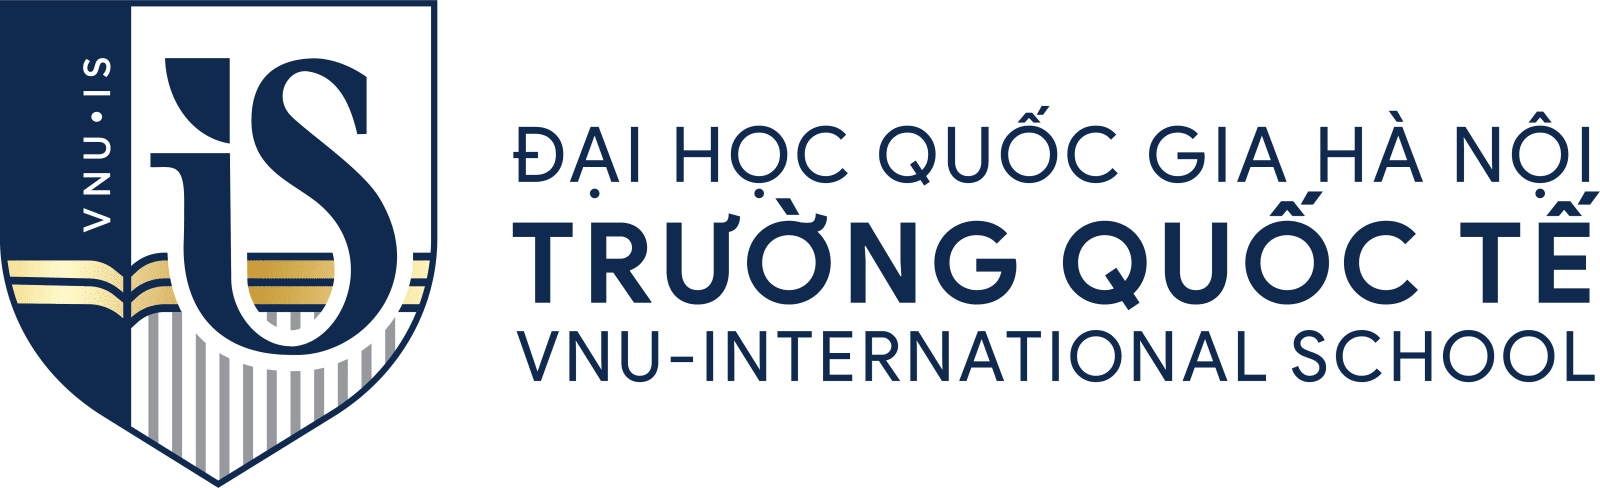 Trường đại học quốc tế Hà Nội